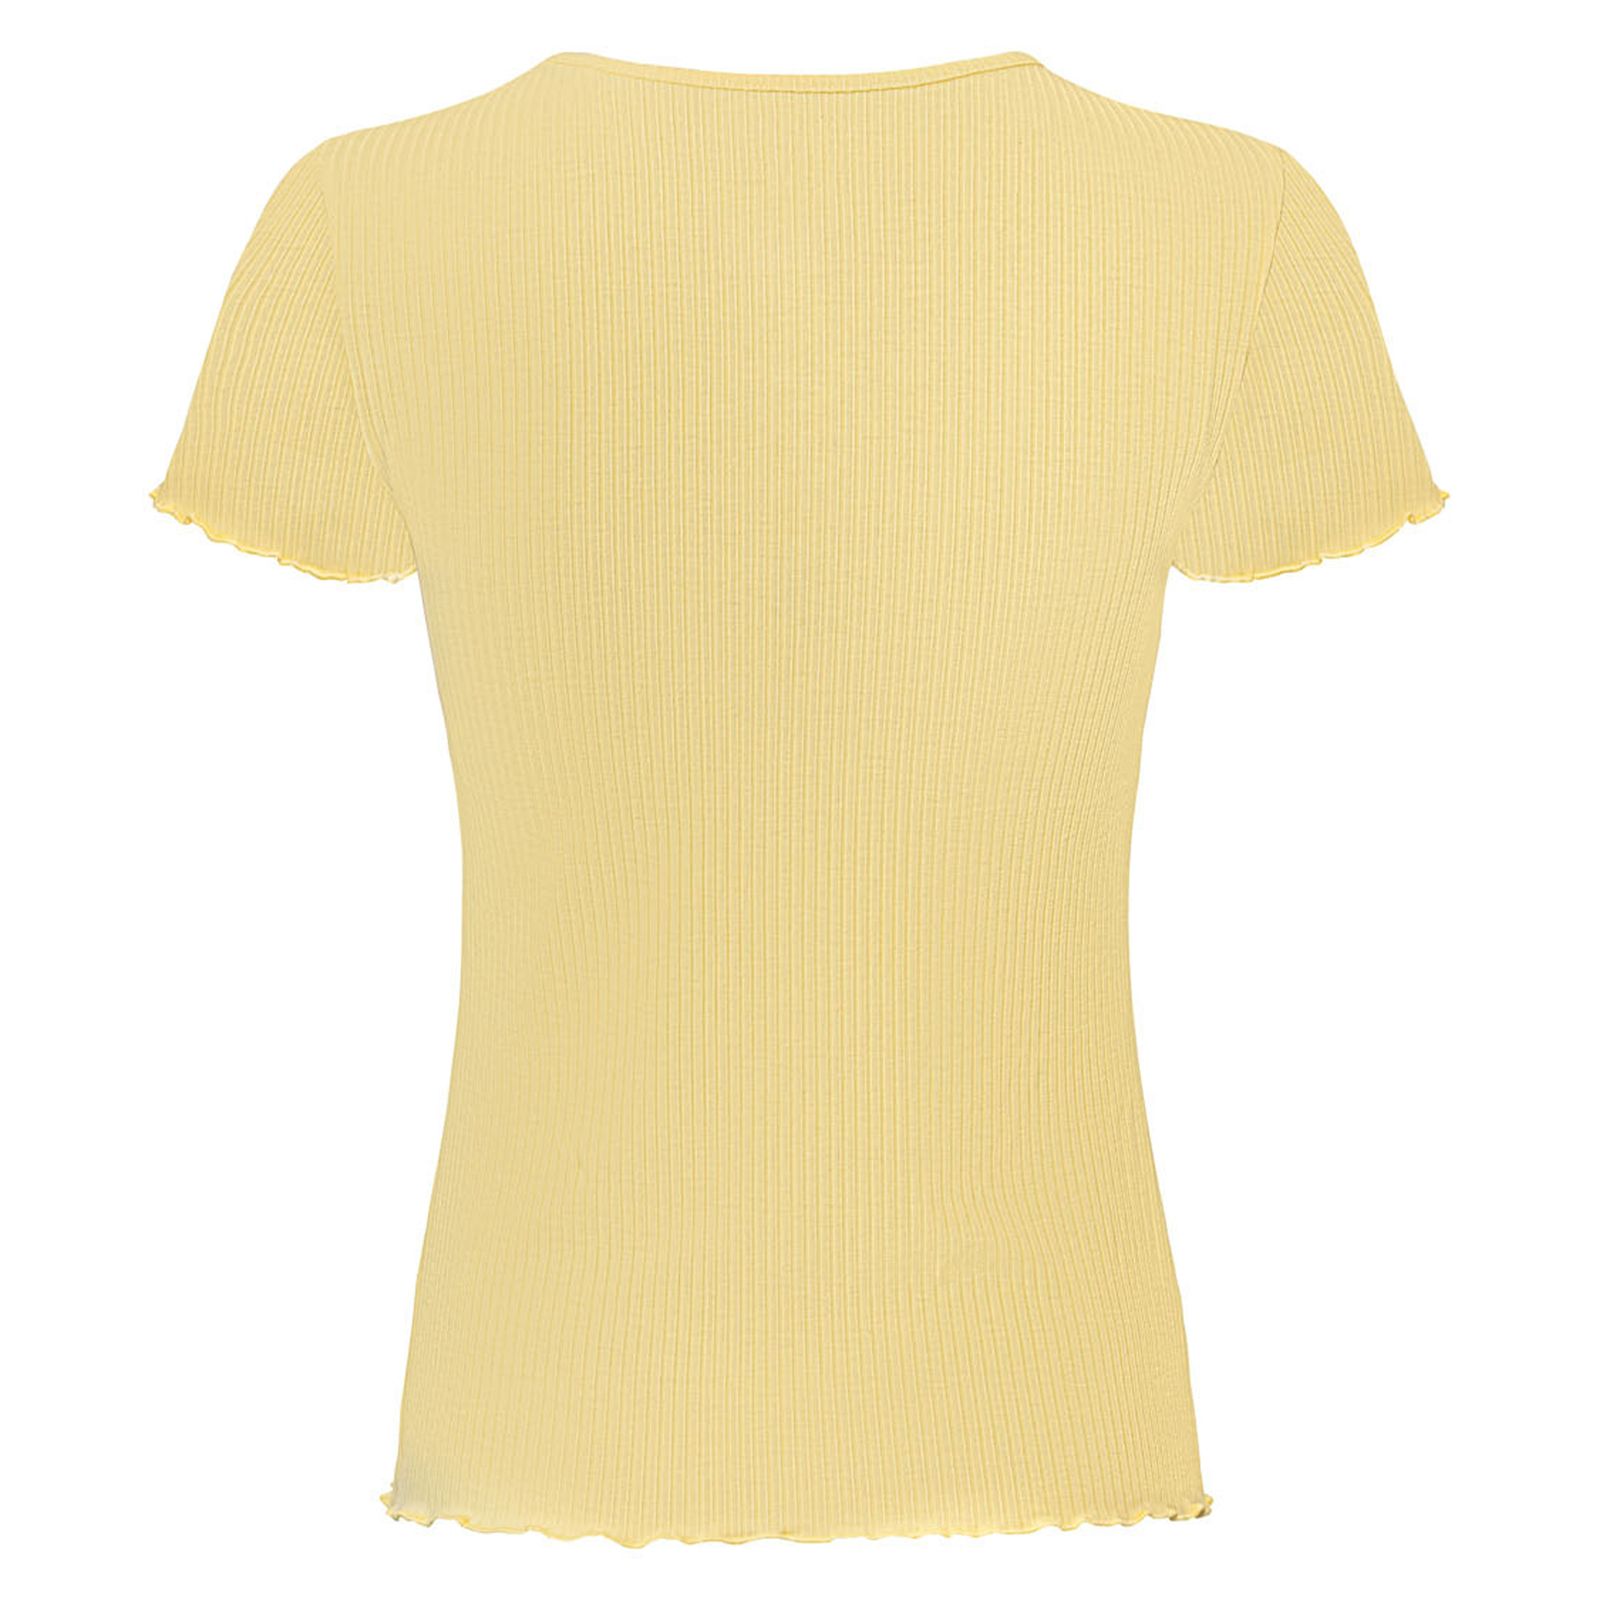 تی شرت آستین کوتاه زنانه اسمارا مدل کبریتی رنگ زرد -  - 2